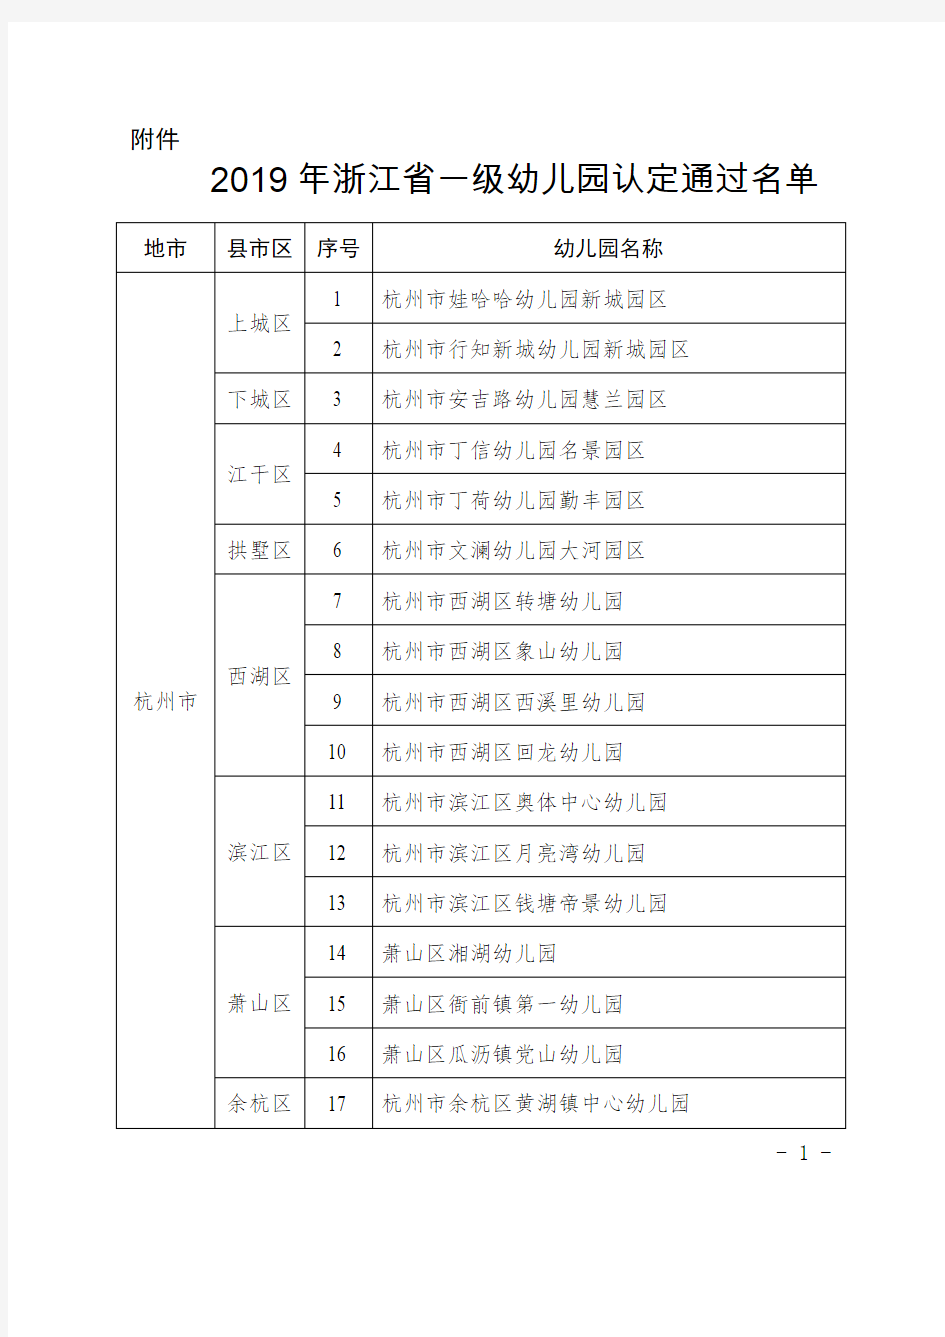 2019年浙江省一级幼儿园认定通过名单